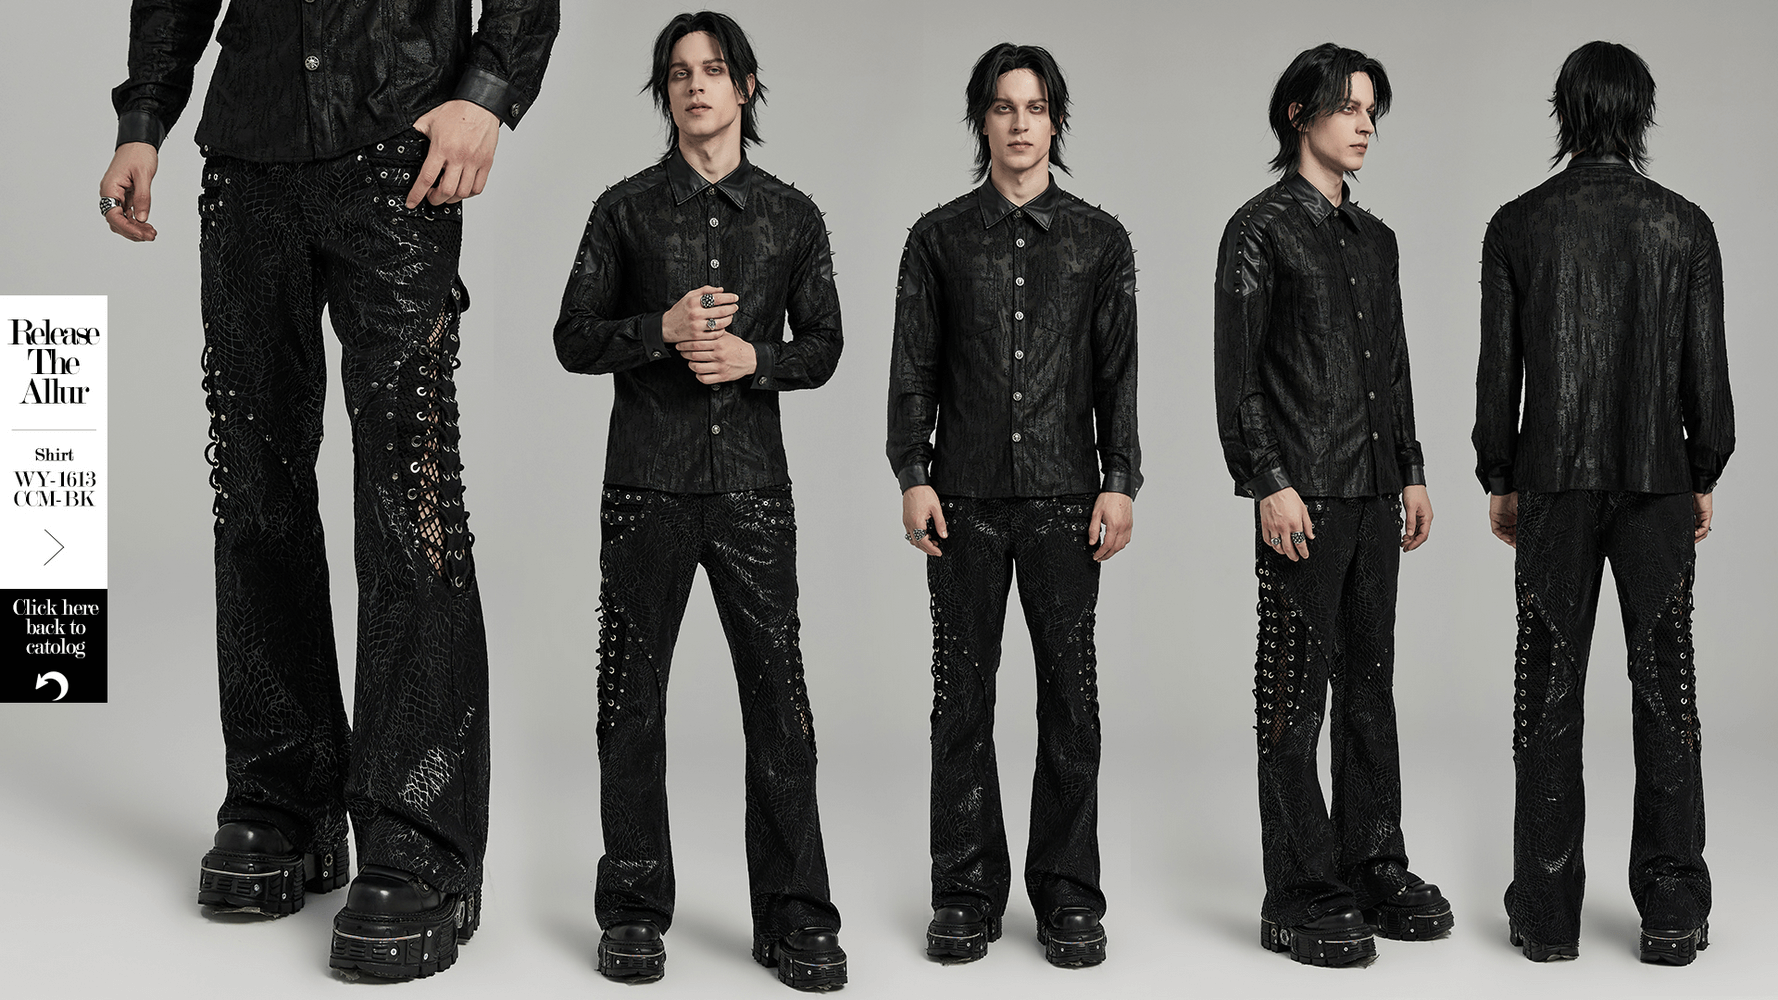 Pantalon évasé gothique à lacets en sergé noir pour hommes